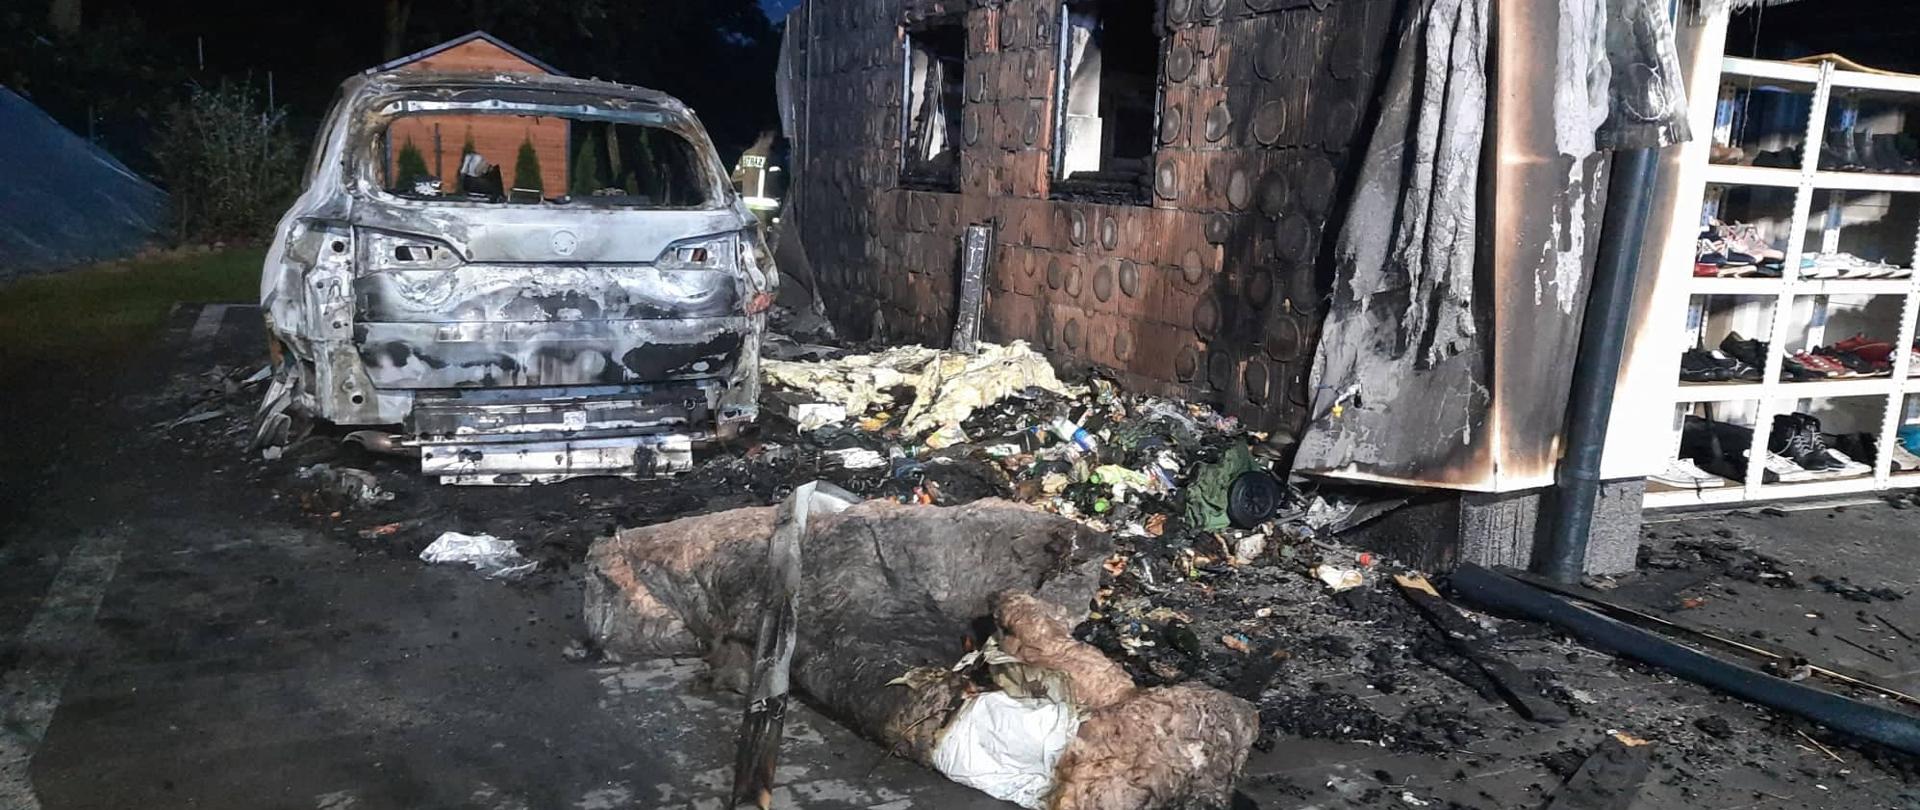 Na zdjęciu widoczny spalony samochód osobowy. Obok samochodu spalona ściana budynku - widoczna tylko ceramika ściany , całe ocieplenie spalone. Przed samochodem widoczna także wełna z poddasza i pozostałości po pożarowe.